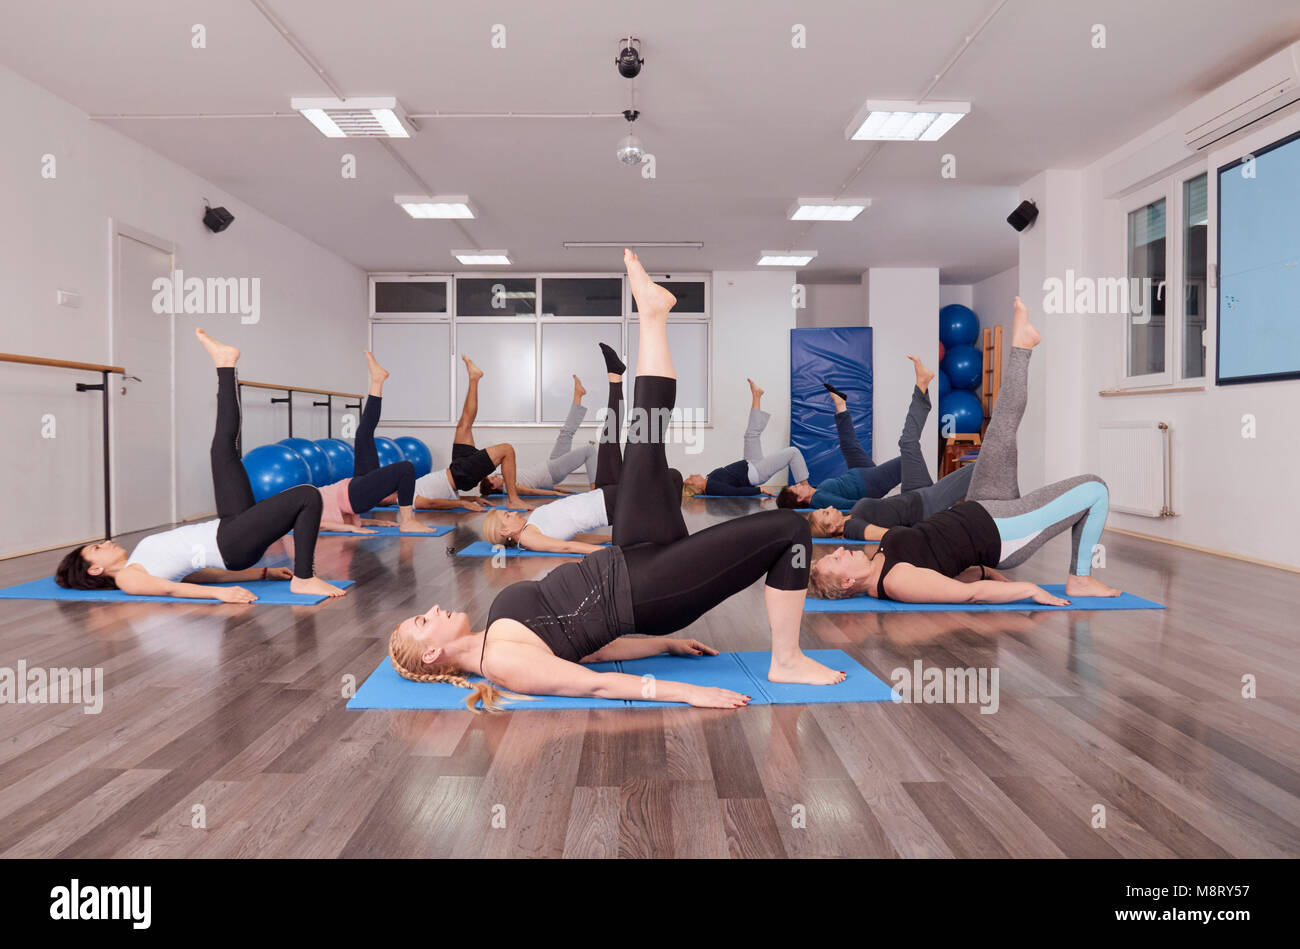 Gruppe von Menschen liegen auf trainingsmatten während des Trainings in Pilates Klasse Stockfoto